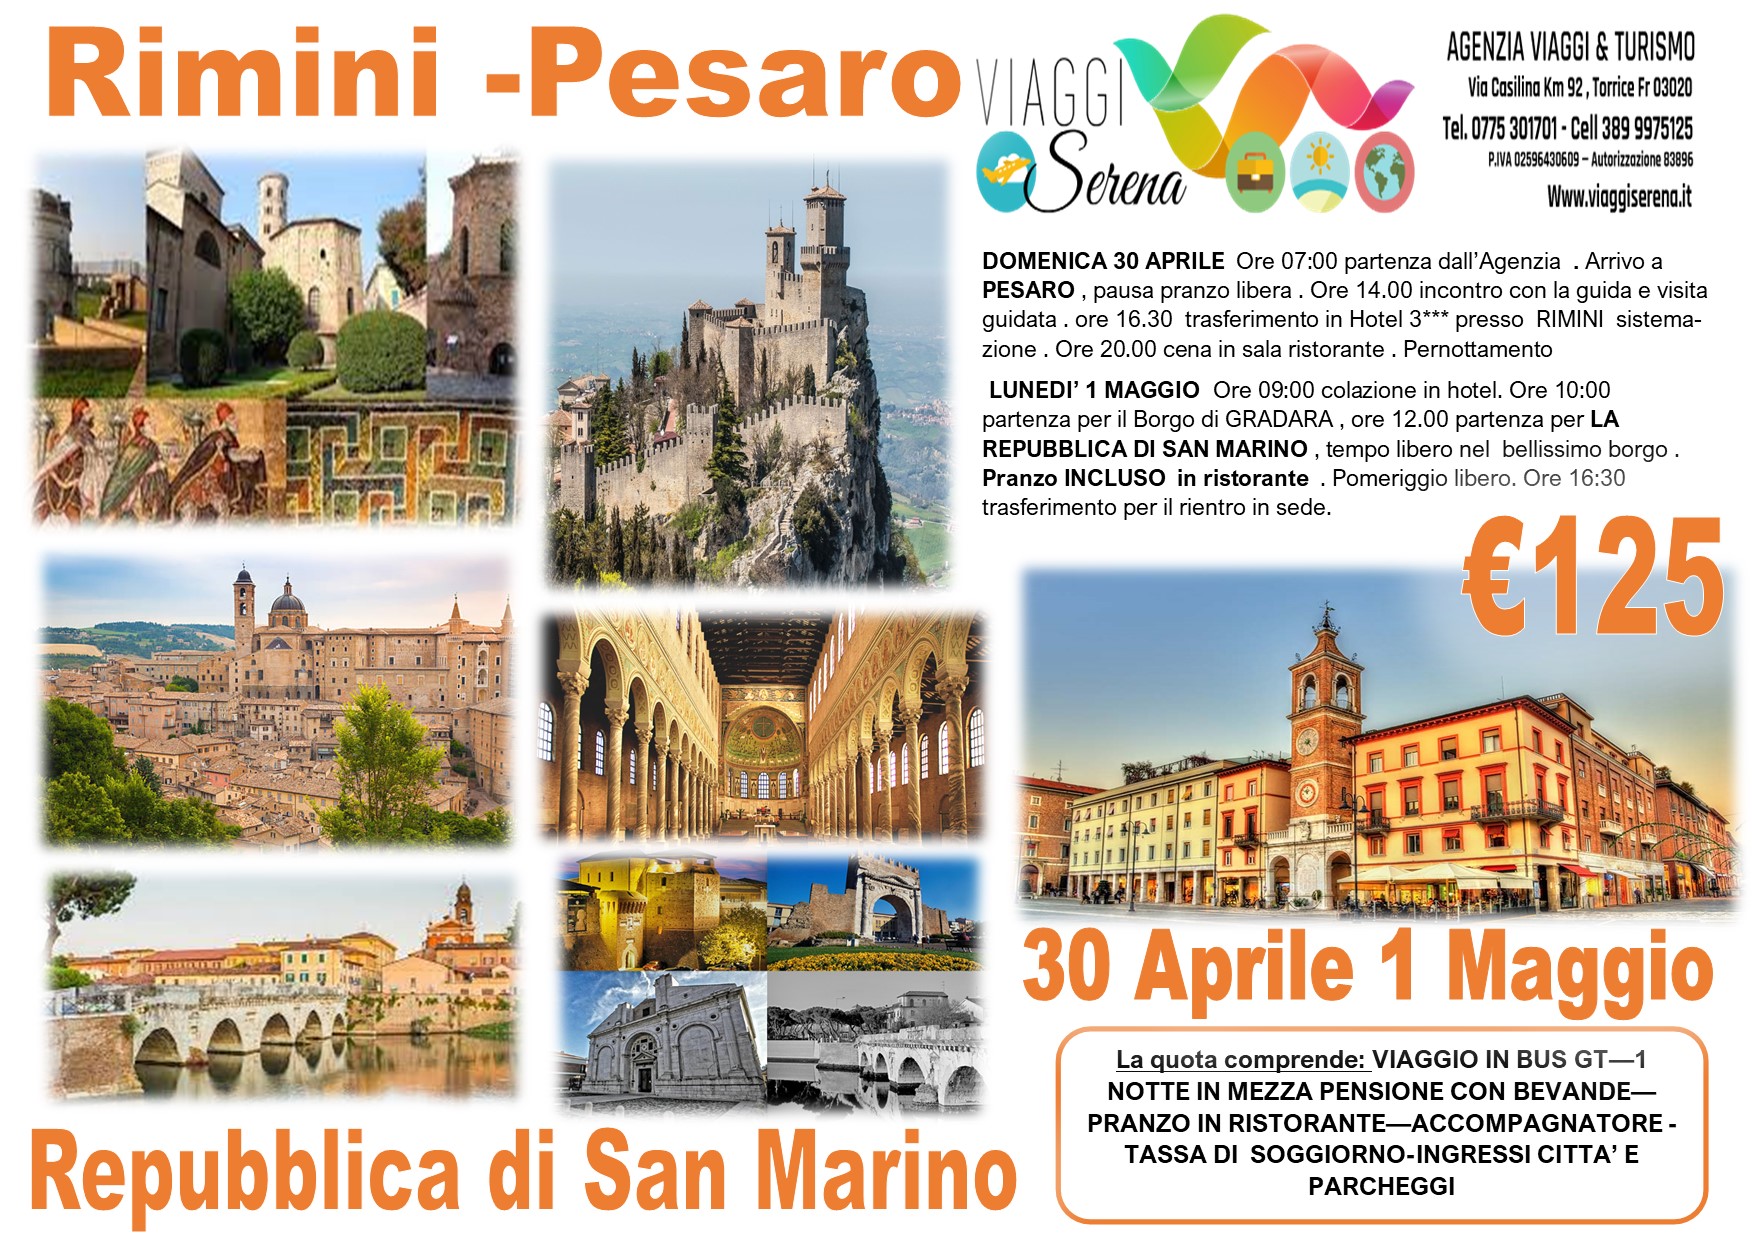 Viaggi di Gruppo: Rimini, Pesaro &  Repubblica di San Marino “PENSIONE COMPLETA” 30 Aprile 1 Maggio € 125,00